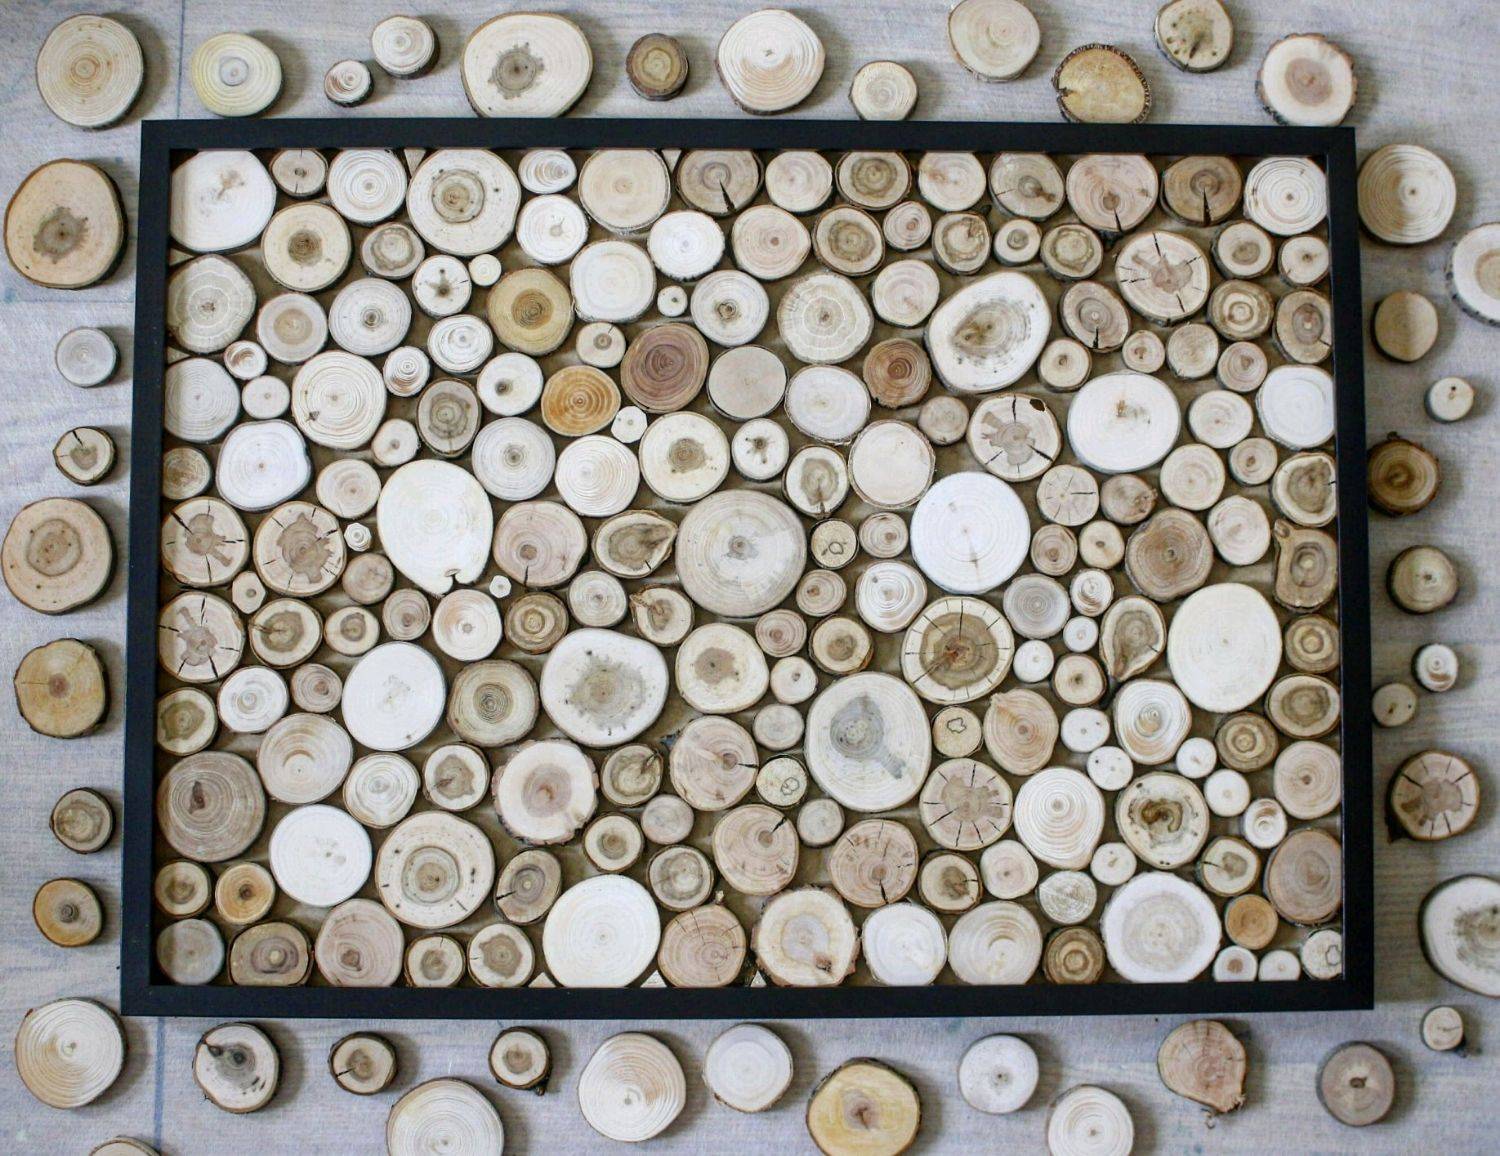 Деревянная мозаика для стен: виды мозаики, варианты и руководство, как приклеить мелкие плиточки или блоки на стену, выбор клея и советы